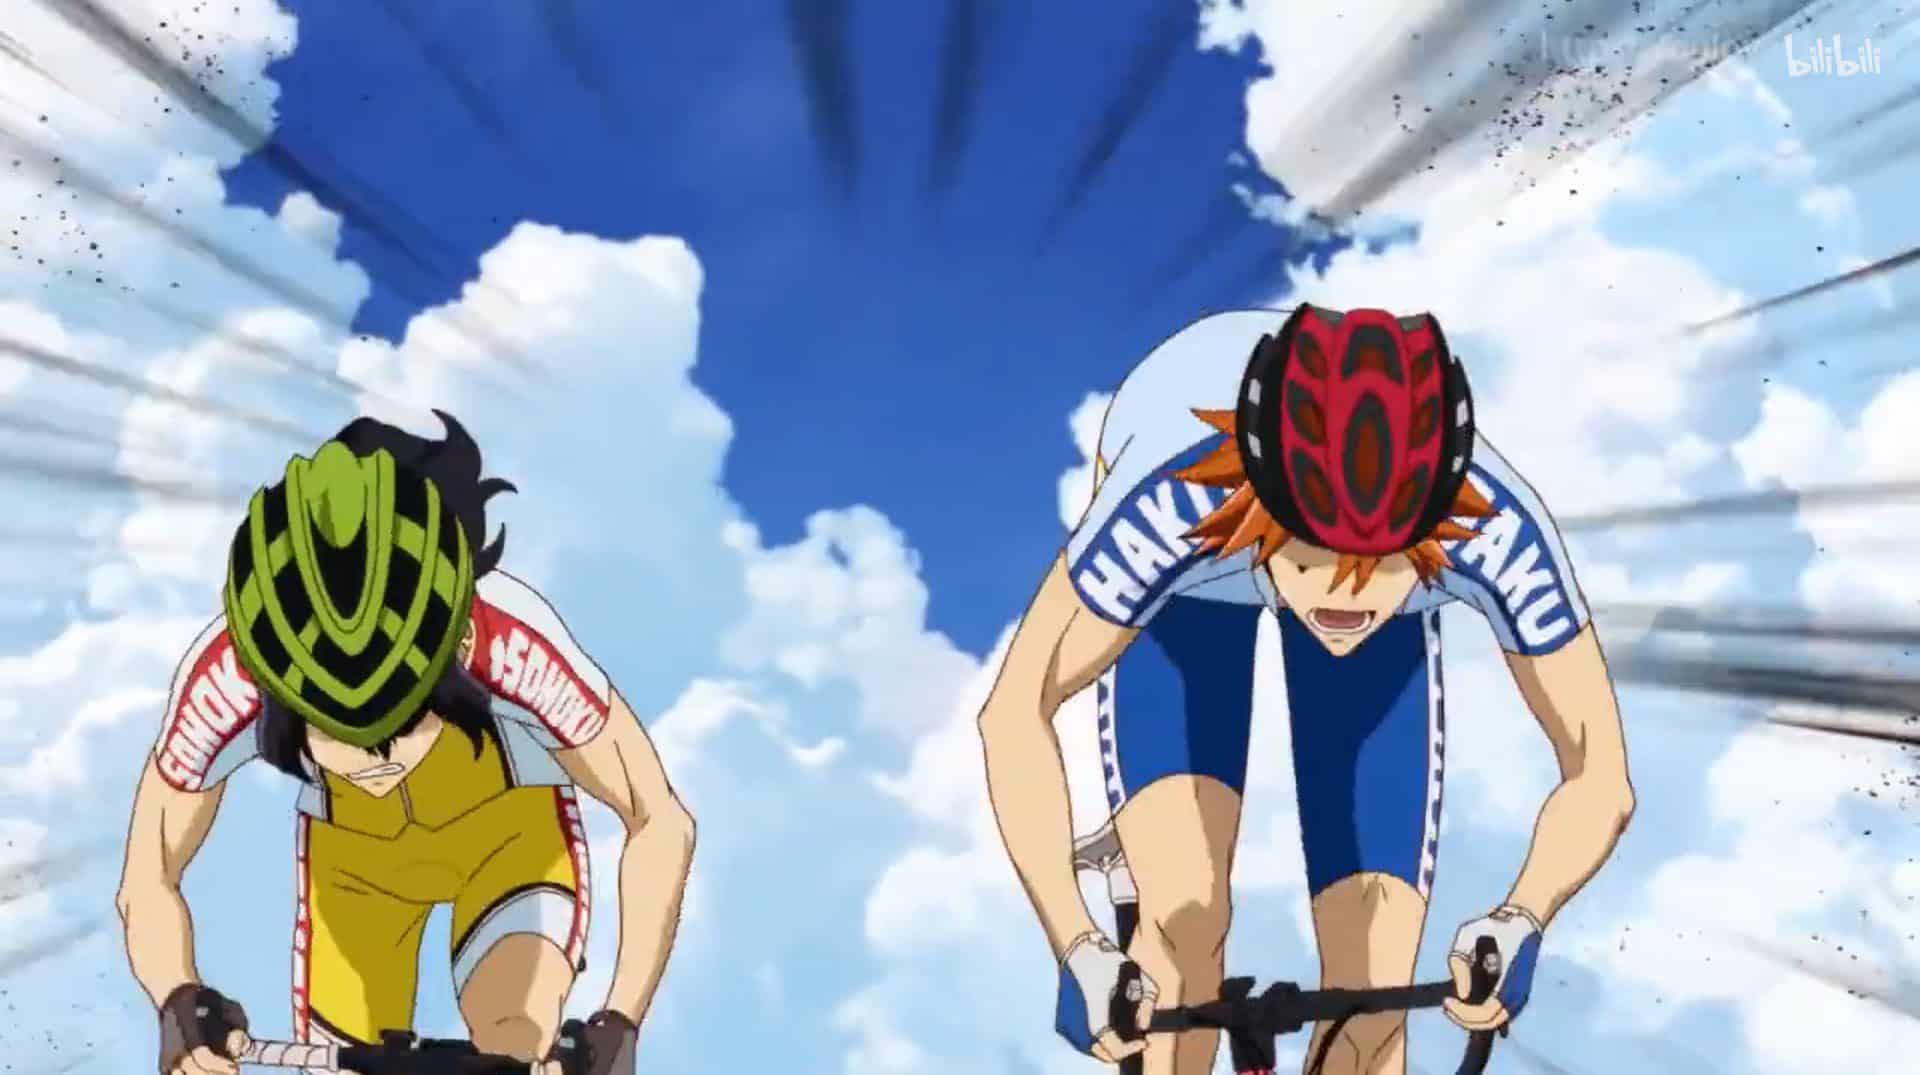 Yowamushi Pedal Temporada 5 Episodio 11 Fecha de lanzamiento